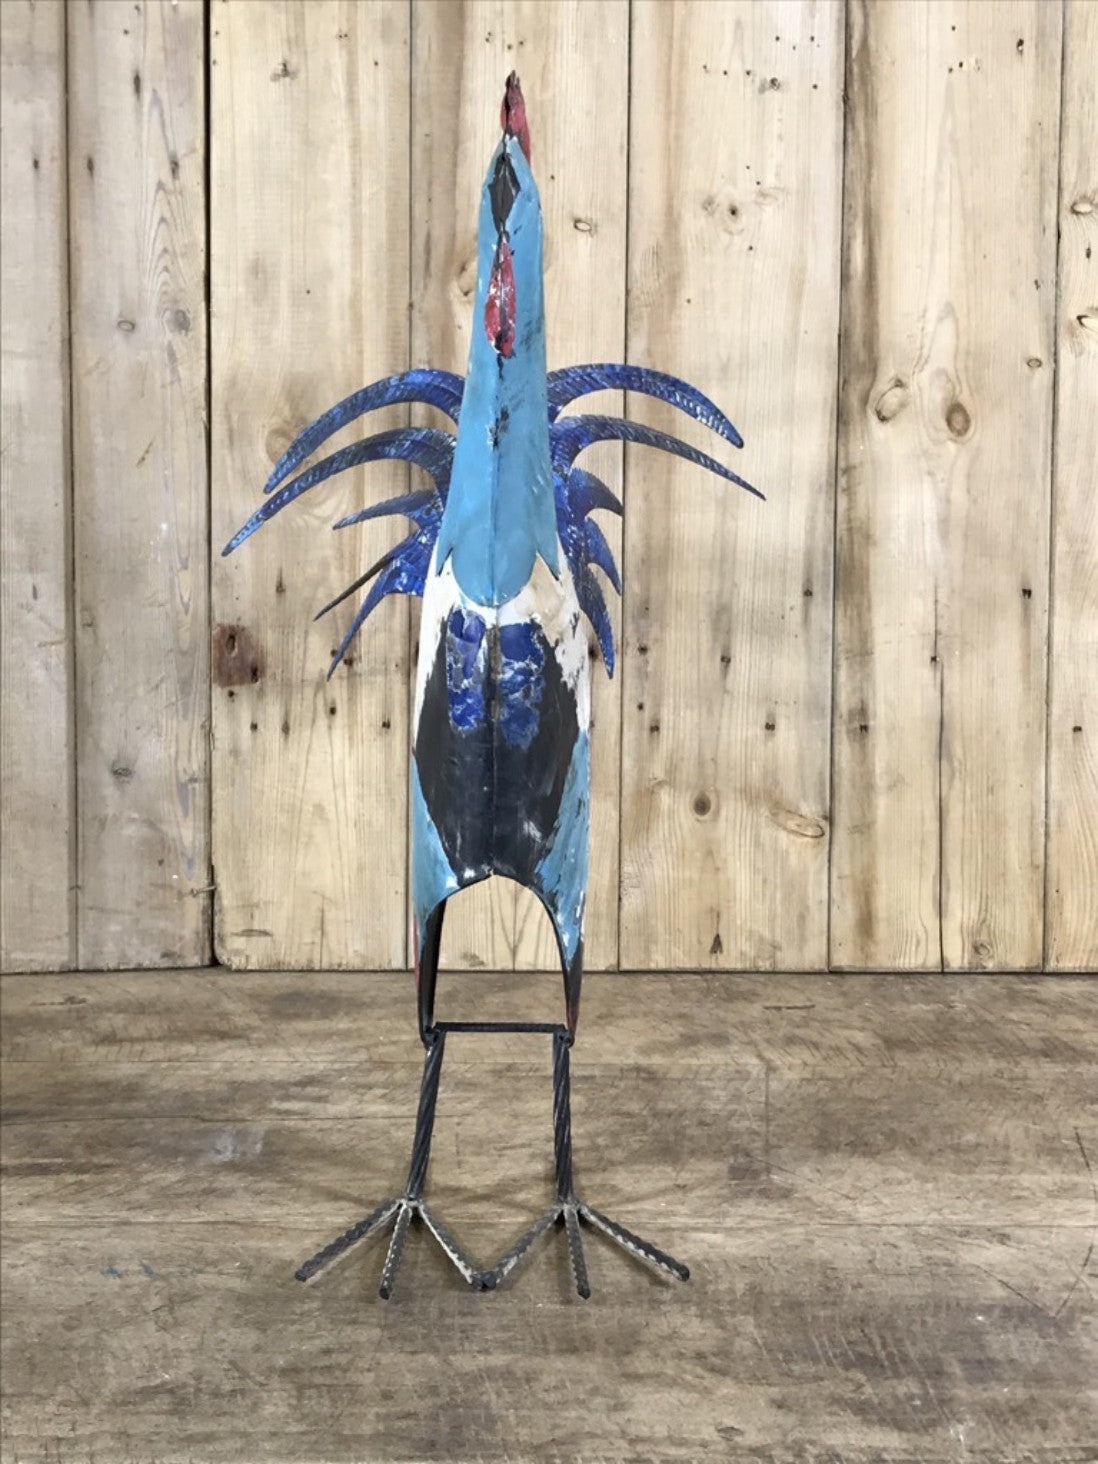 Rustic Hand Painted Metal Tin Standing Cockerel Chicken Bird Figure